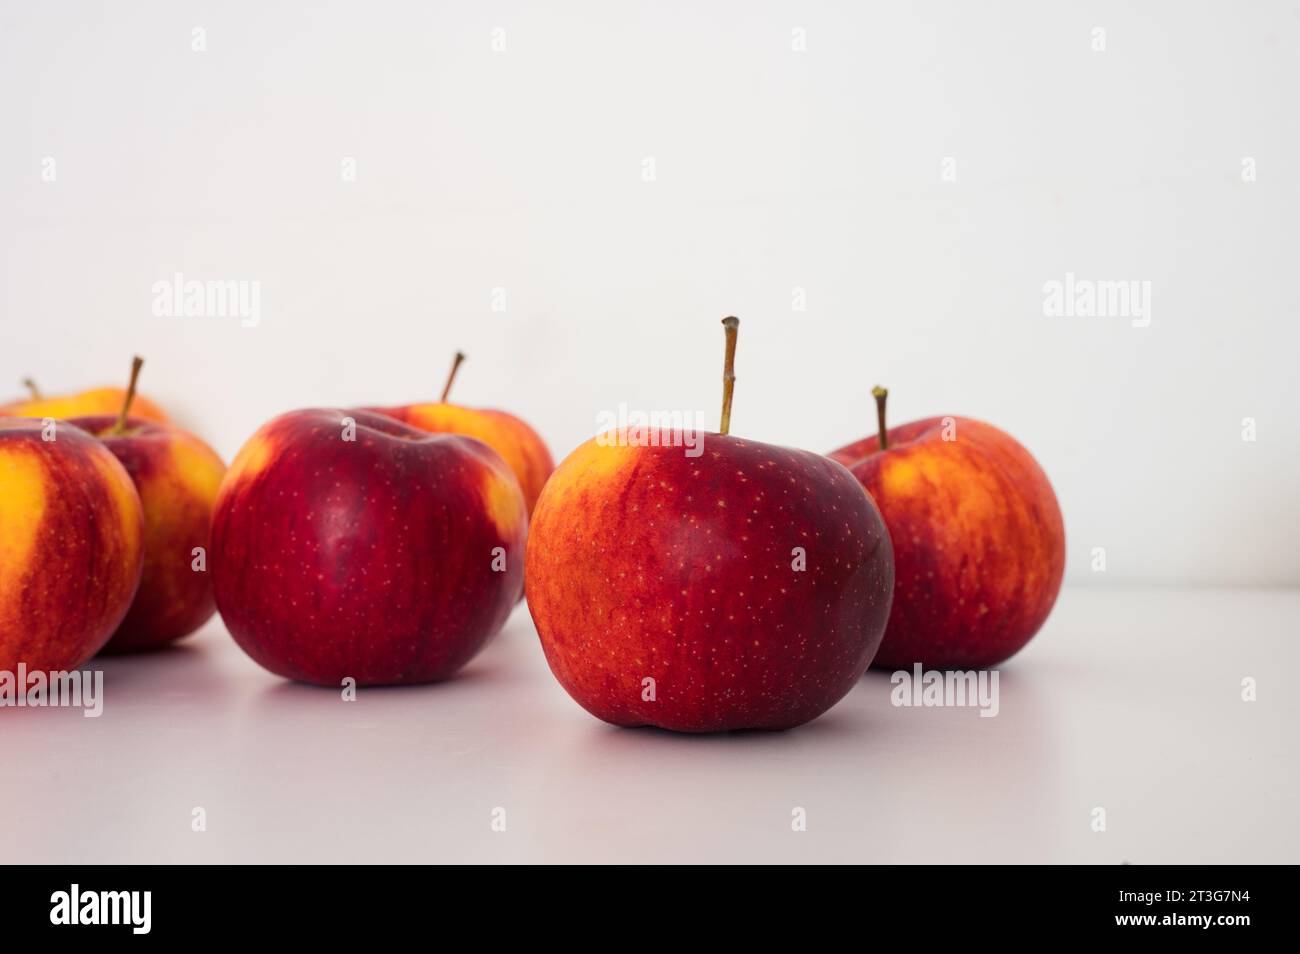 Groupe de pommes rouges jaunes. Fruits frais biologiques et image de la récolte d'automne Banque D'Images